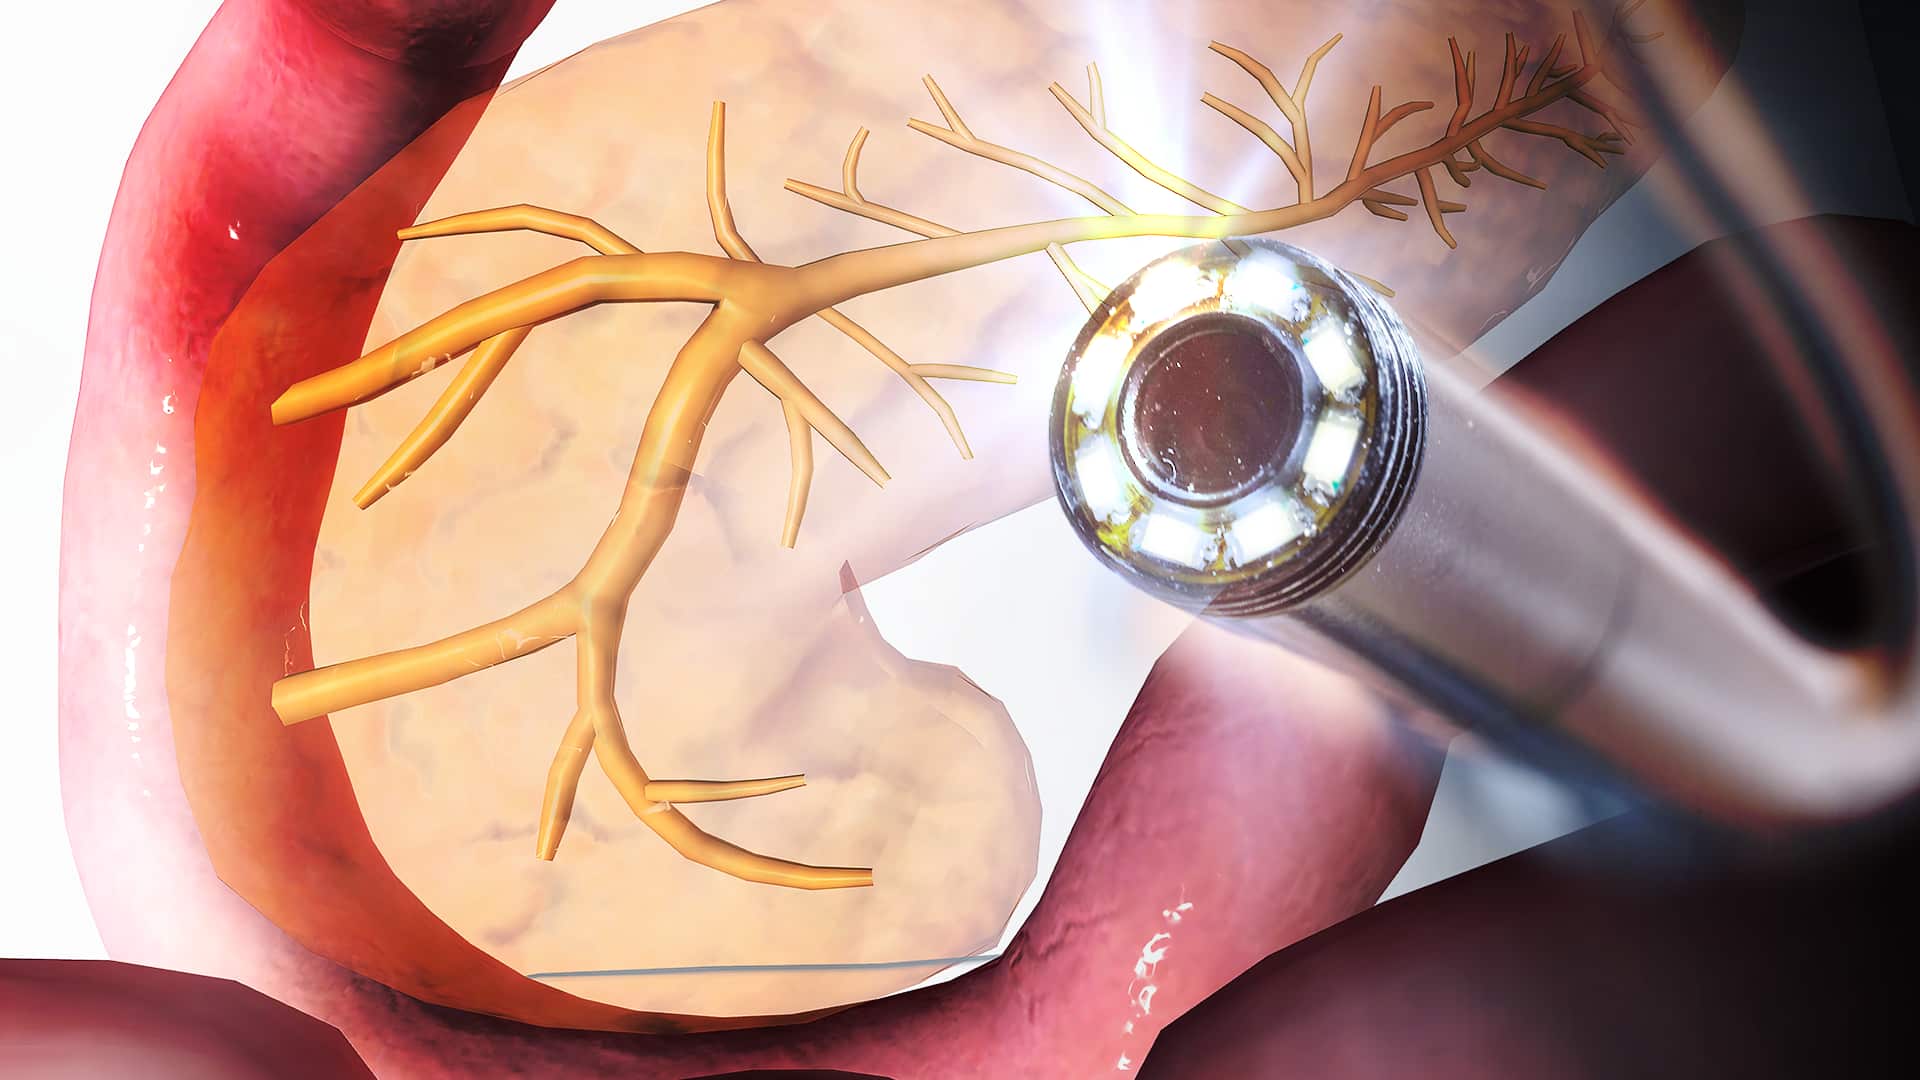 膵臓と内視鏡イメージ図